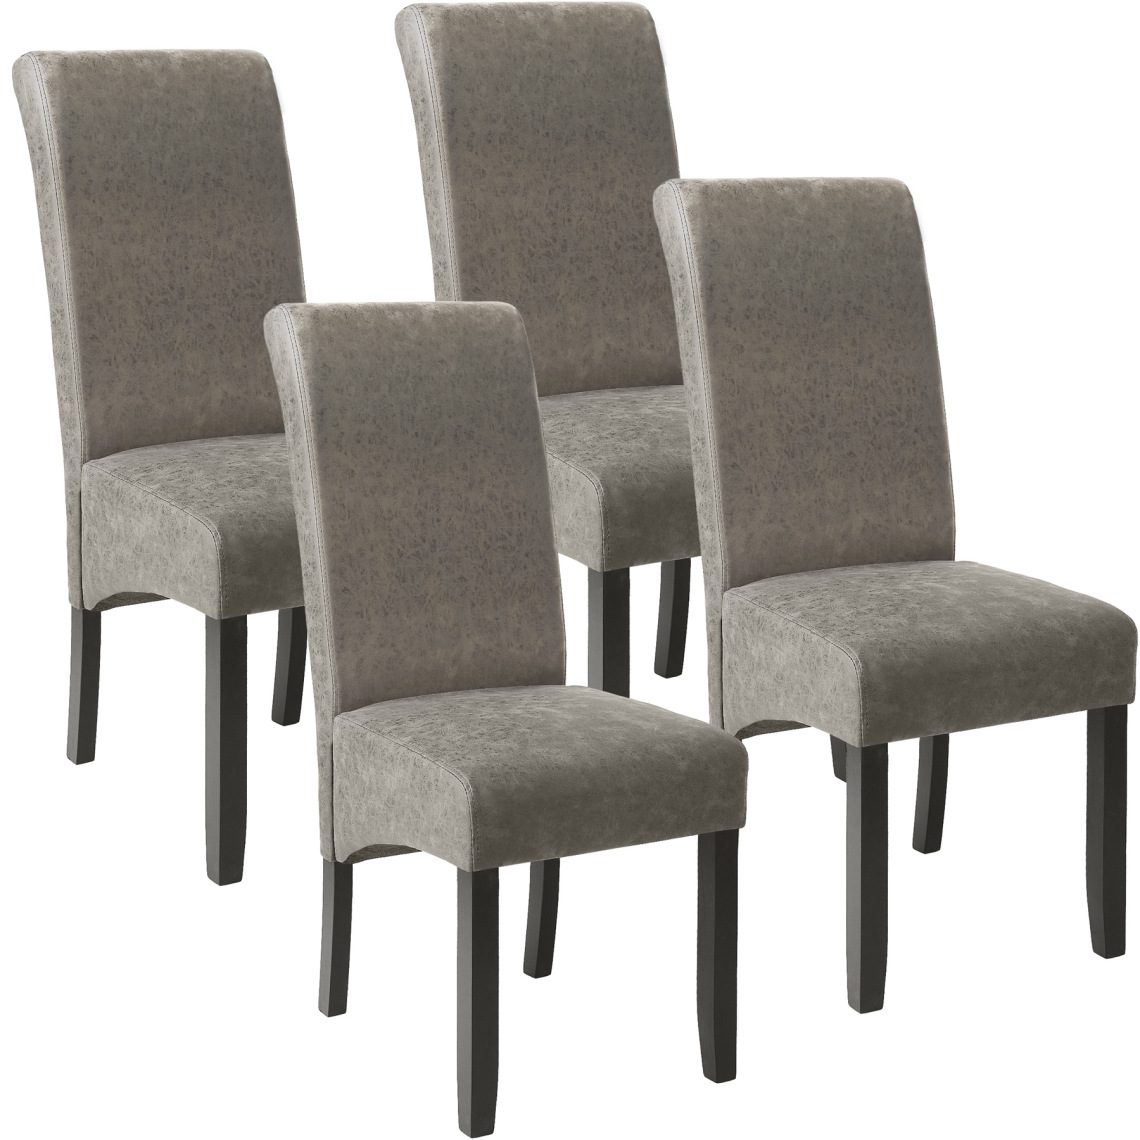 Tectake - Lot de 4 chaises aspect cuir - gris marbré - Chaises